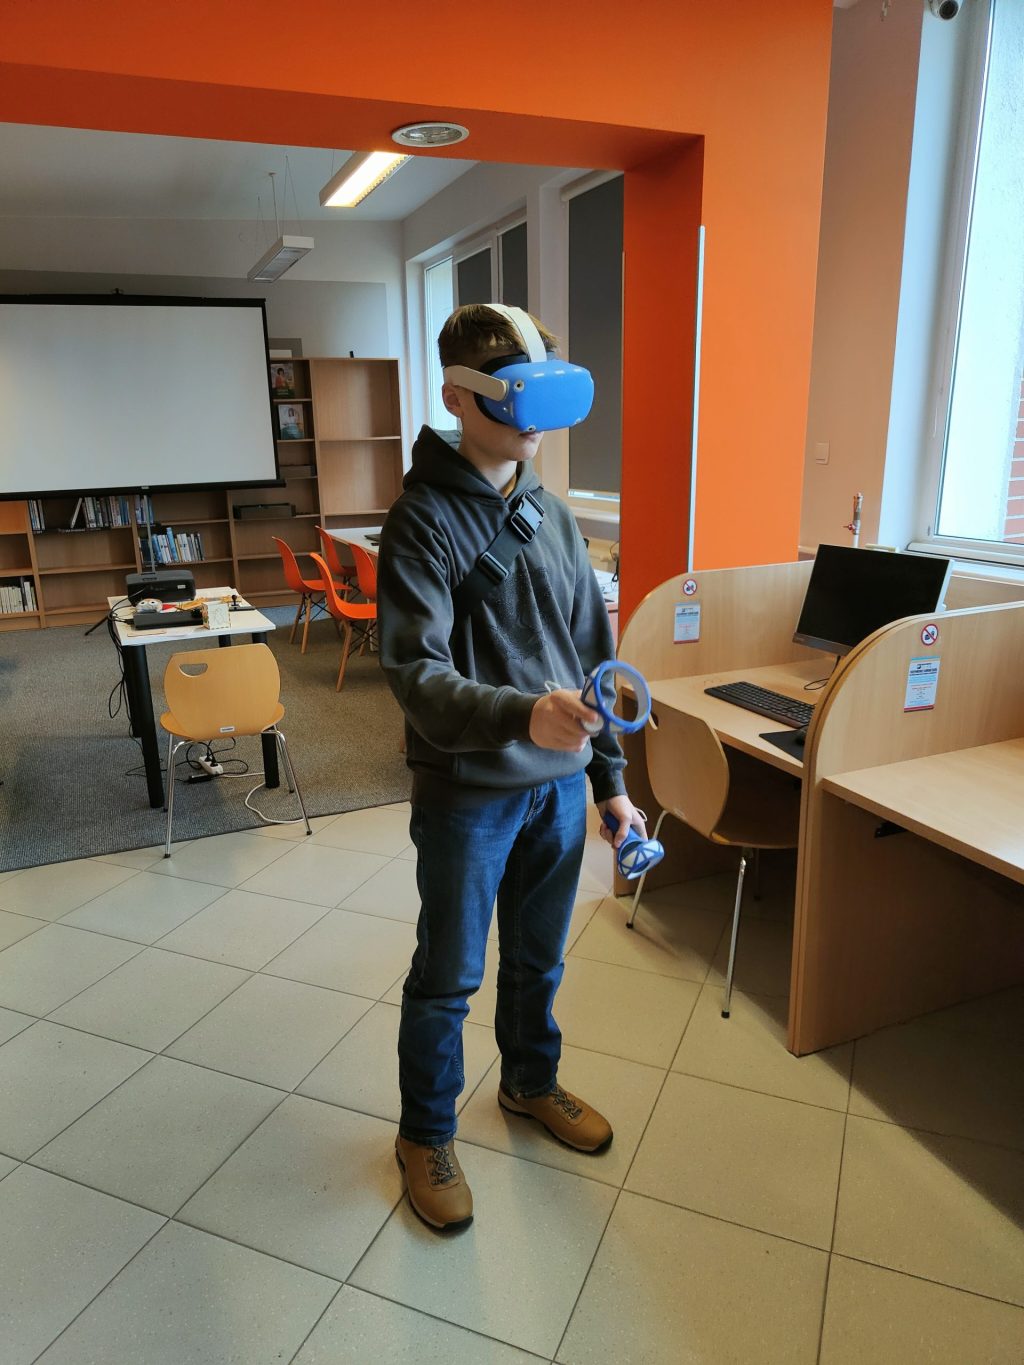 Chłopiec korzystający z gogli VR. W tle biurka i ekran projekcyjny.